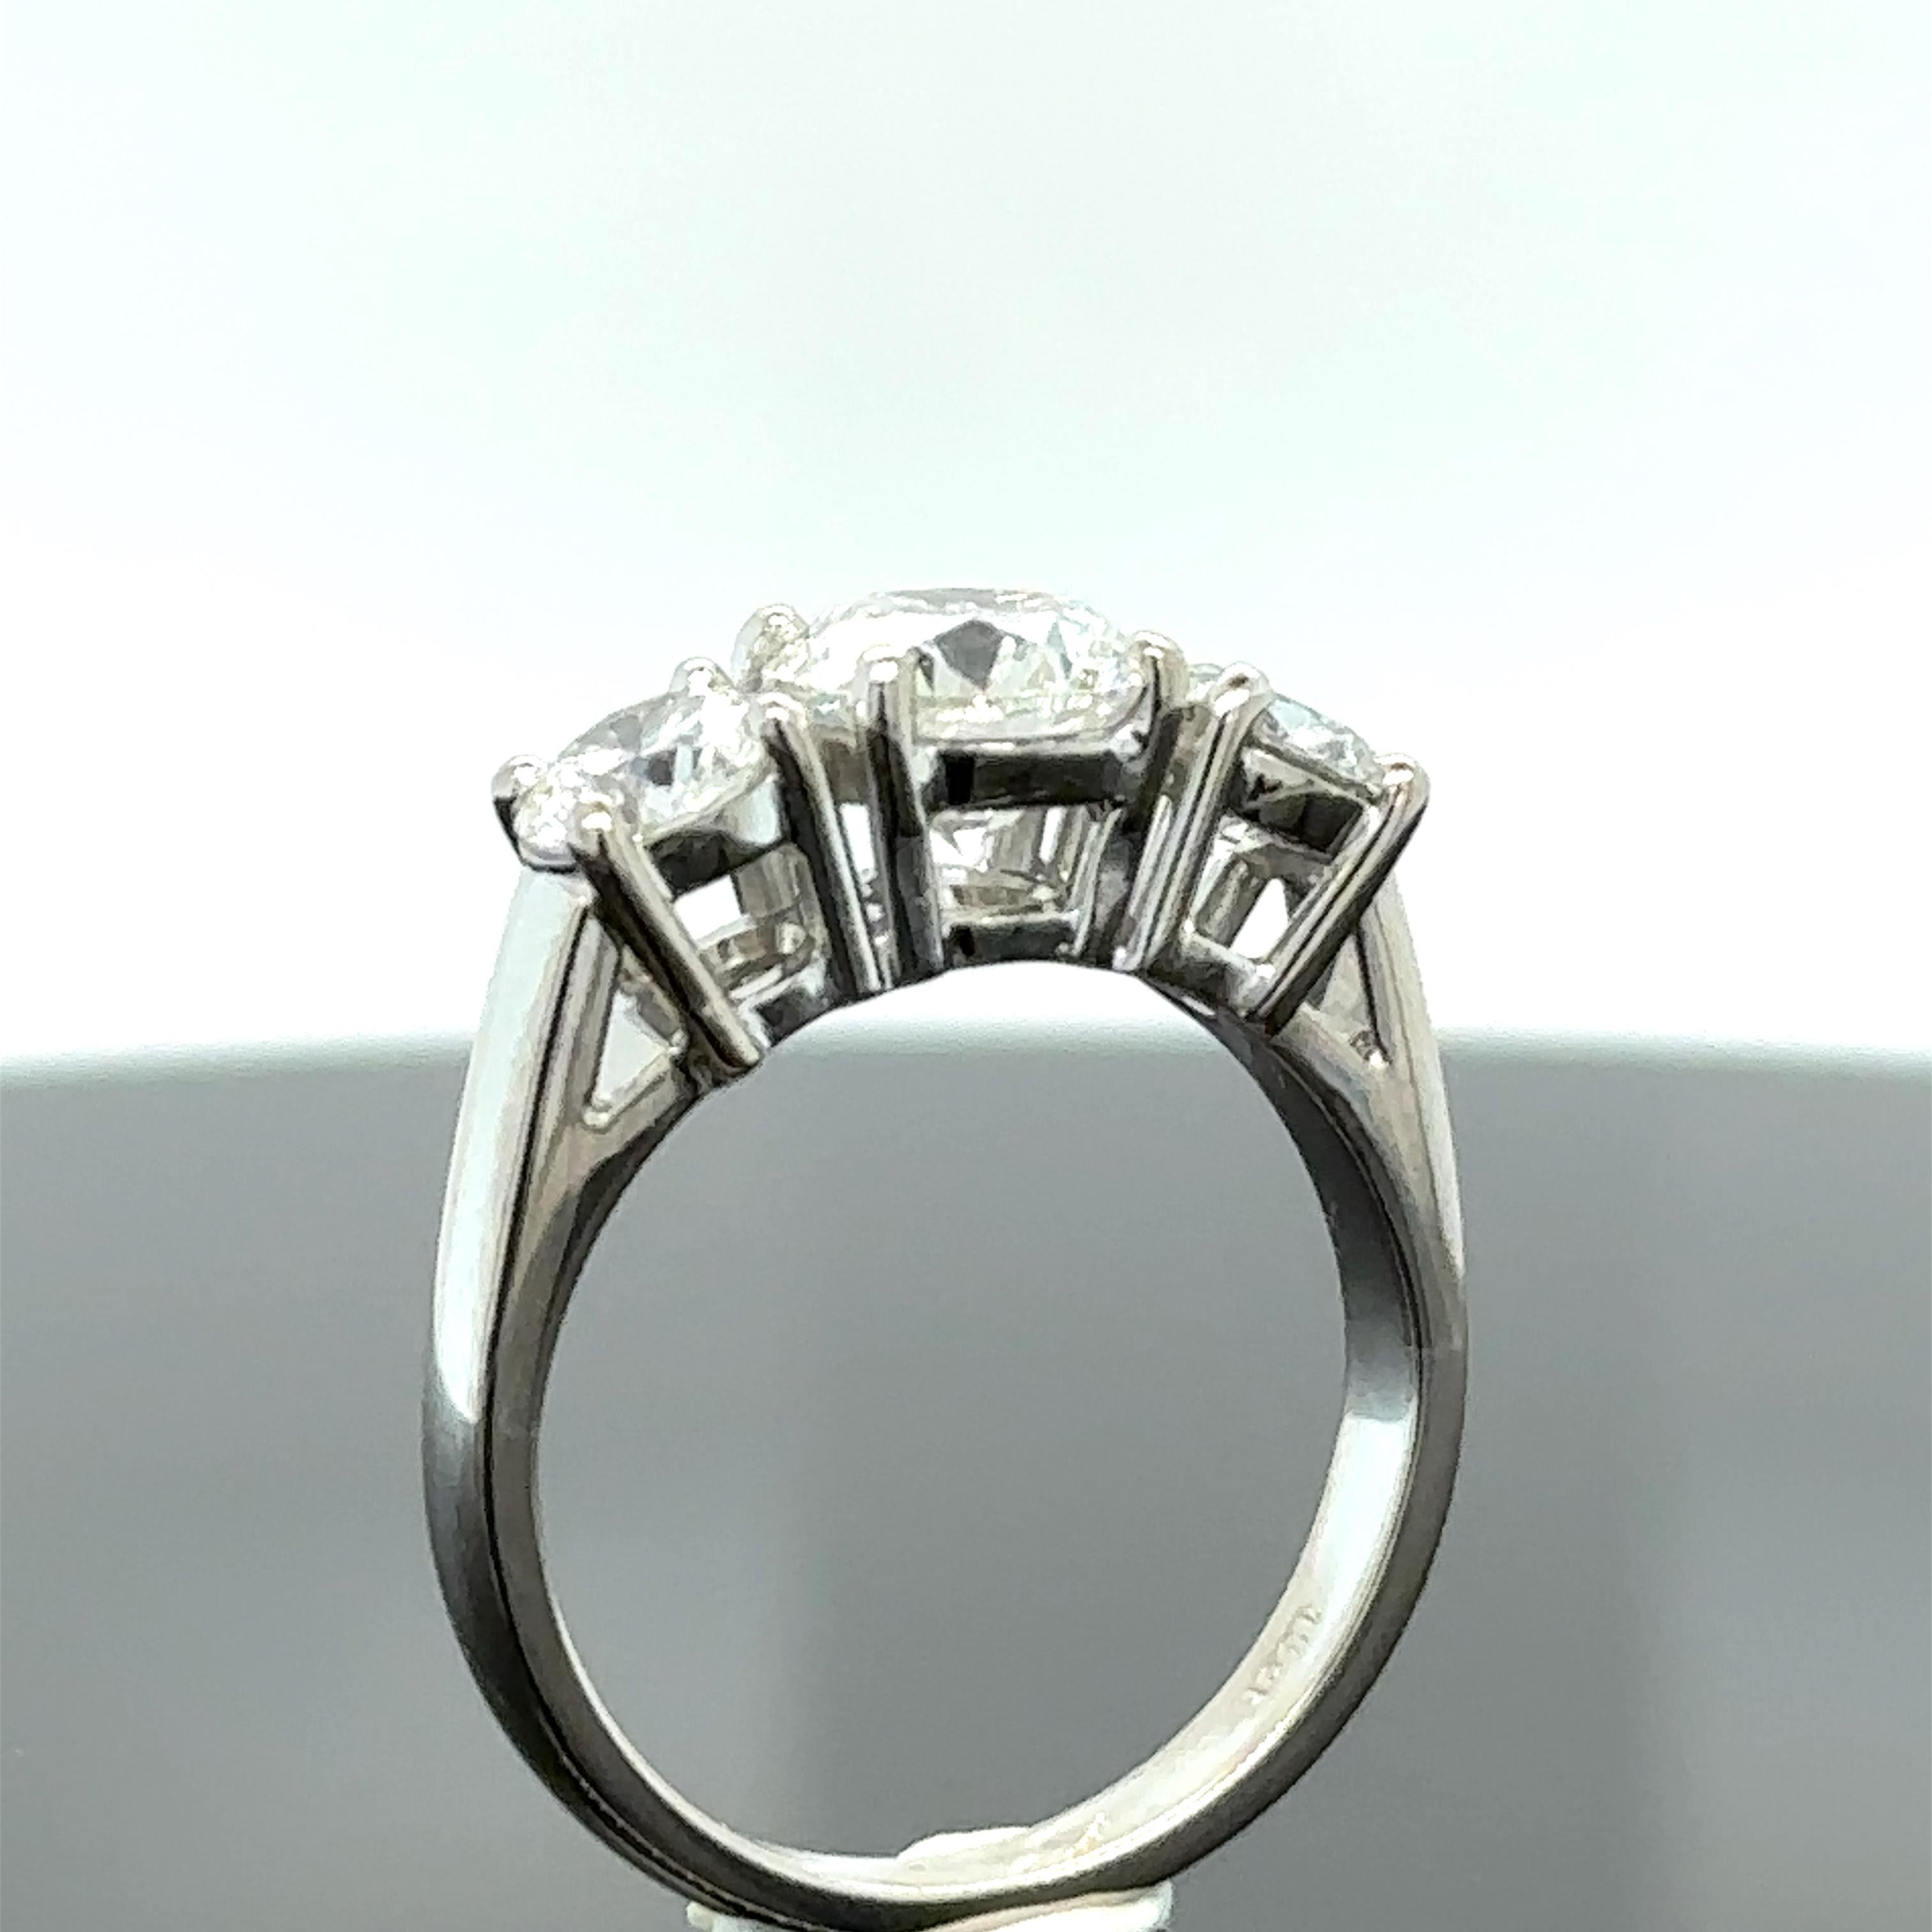 Women's Bespoke 3 Stone Diamond Engagement Ring 1.51ct